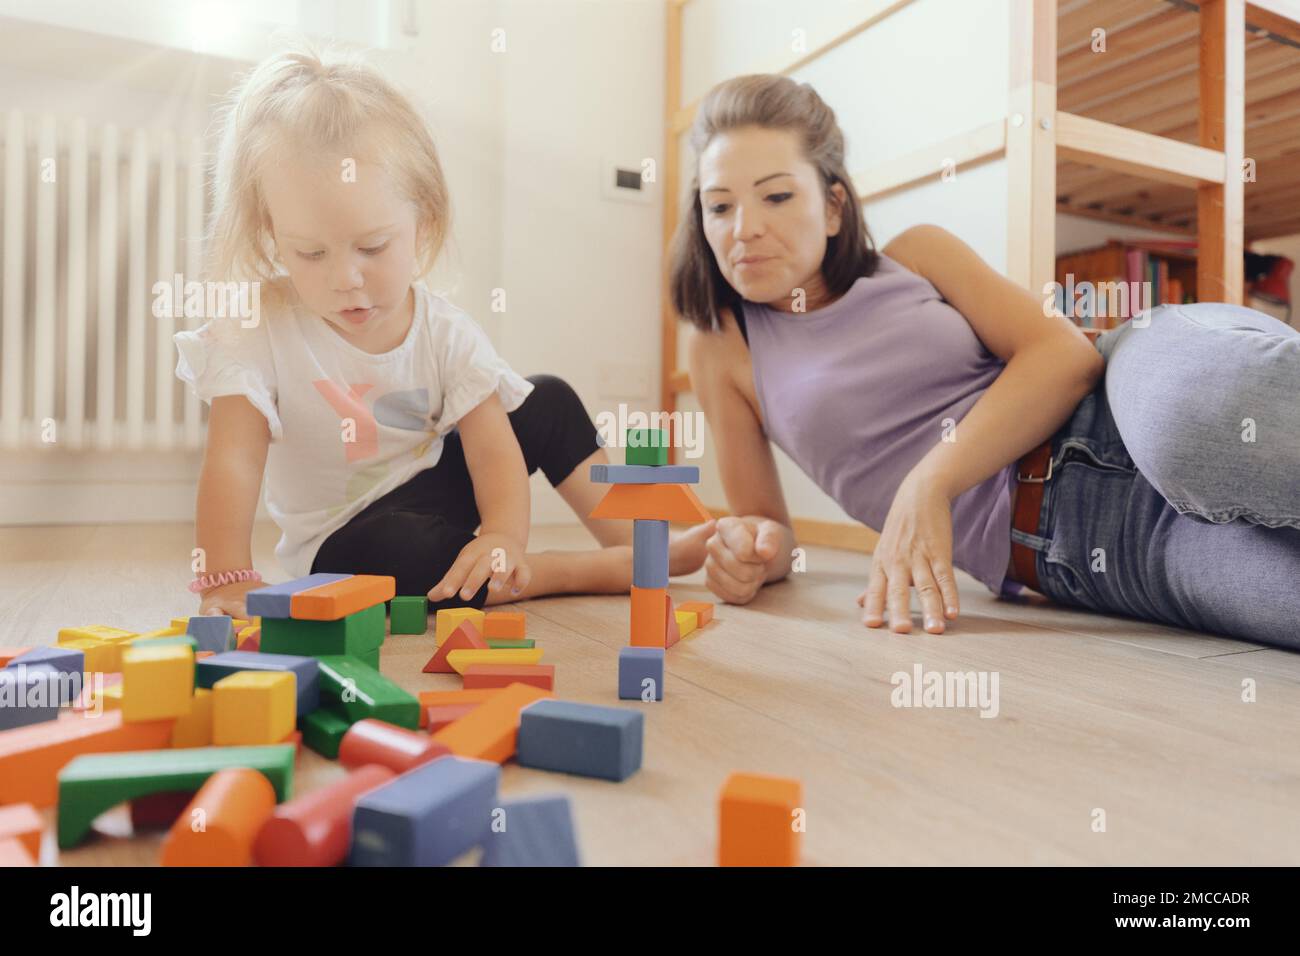 Dans une pièce lumineuse et colorée, mère et fille jouent avec des constructions en bois colorées, parlant les uns aux autres comme ils construisent et inventent Banque D'Images